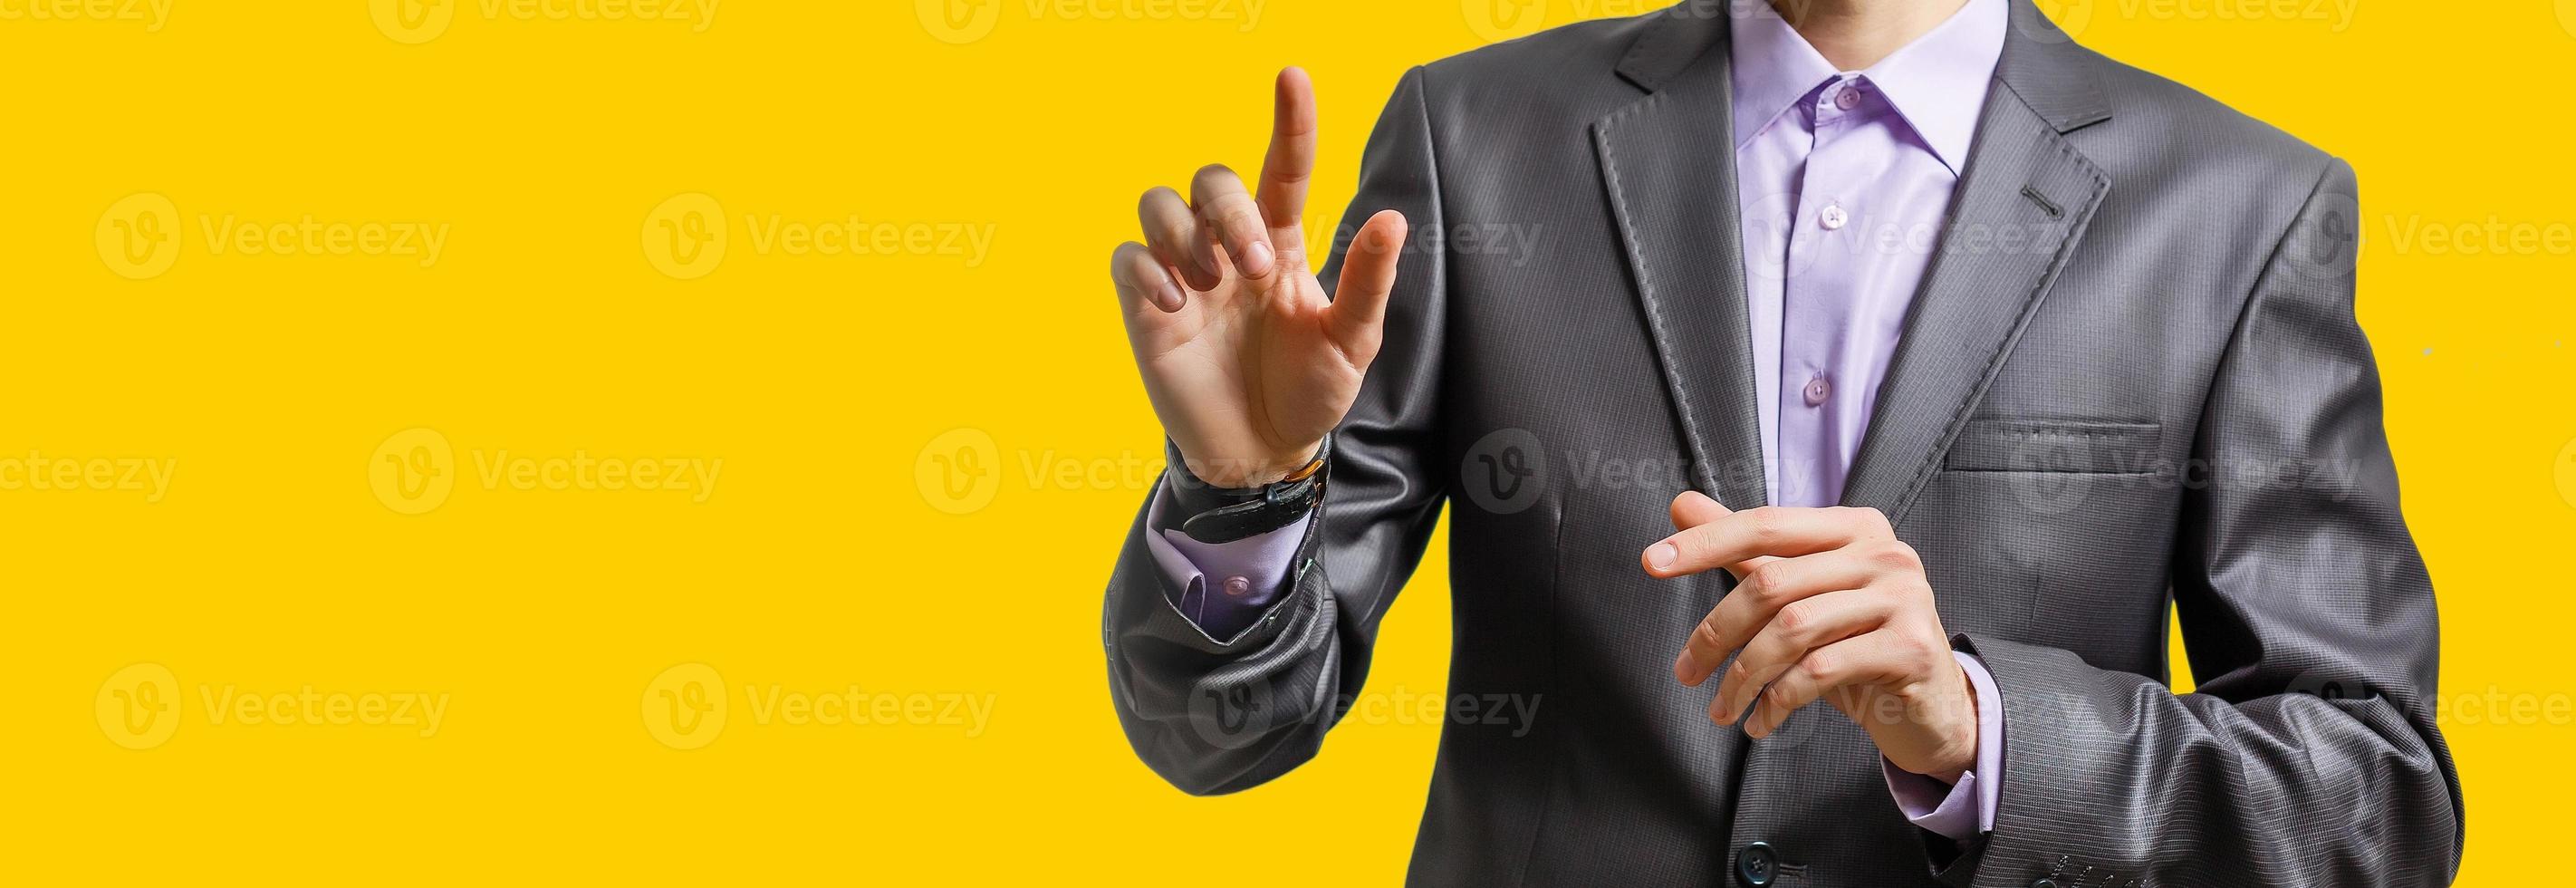 main d'homme d'affaires touchant le point de carte, connexion réseau, signification internationale, copie espace fond jaune photo